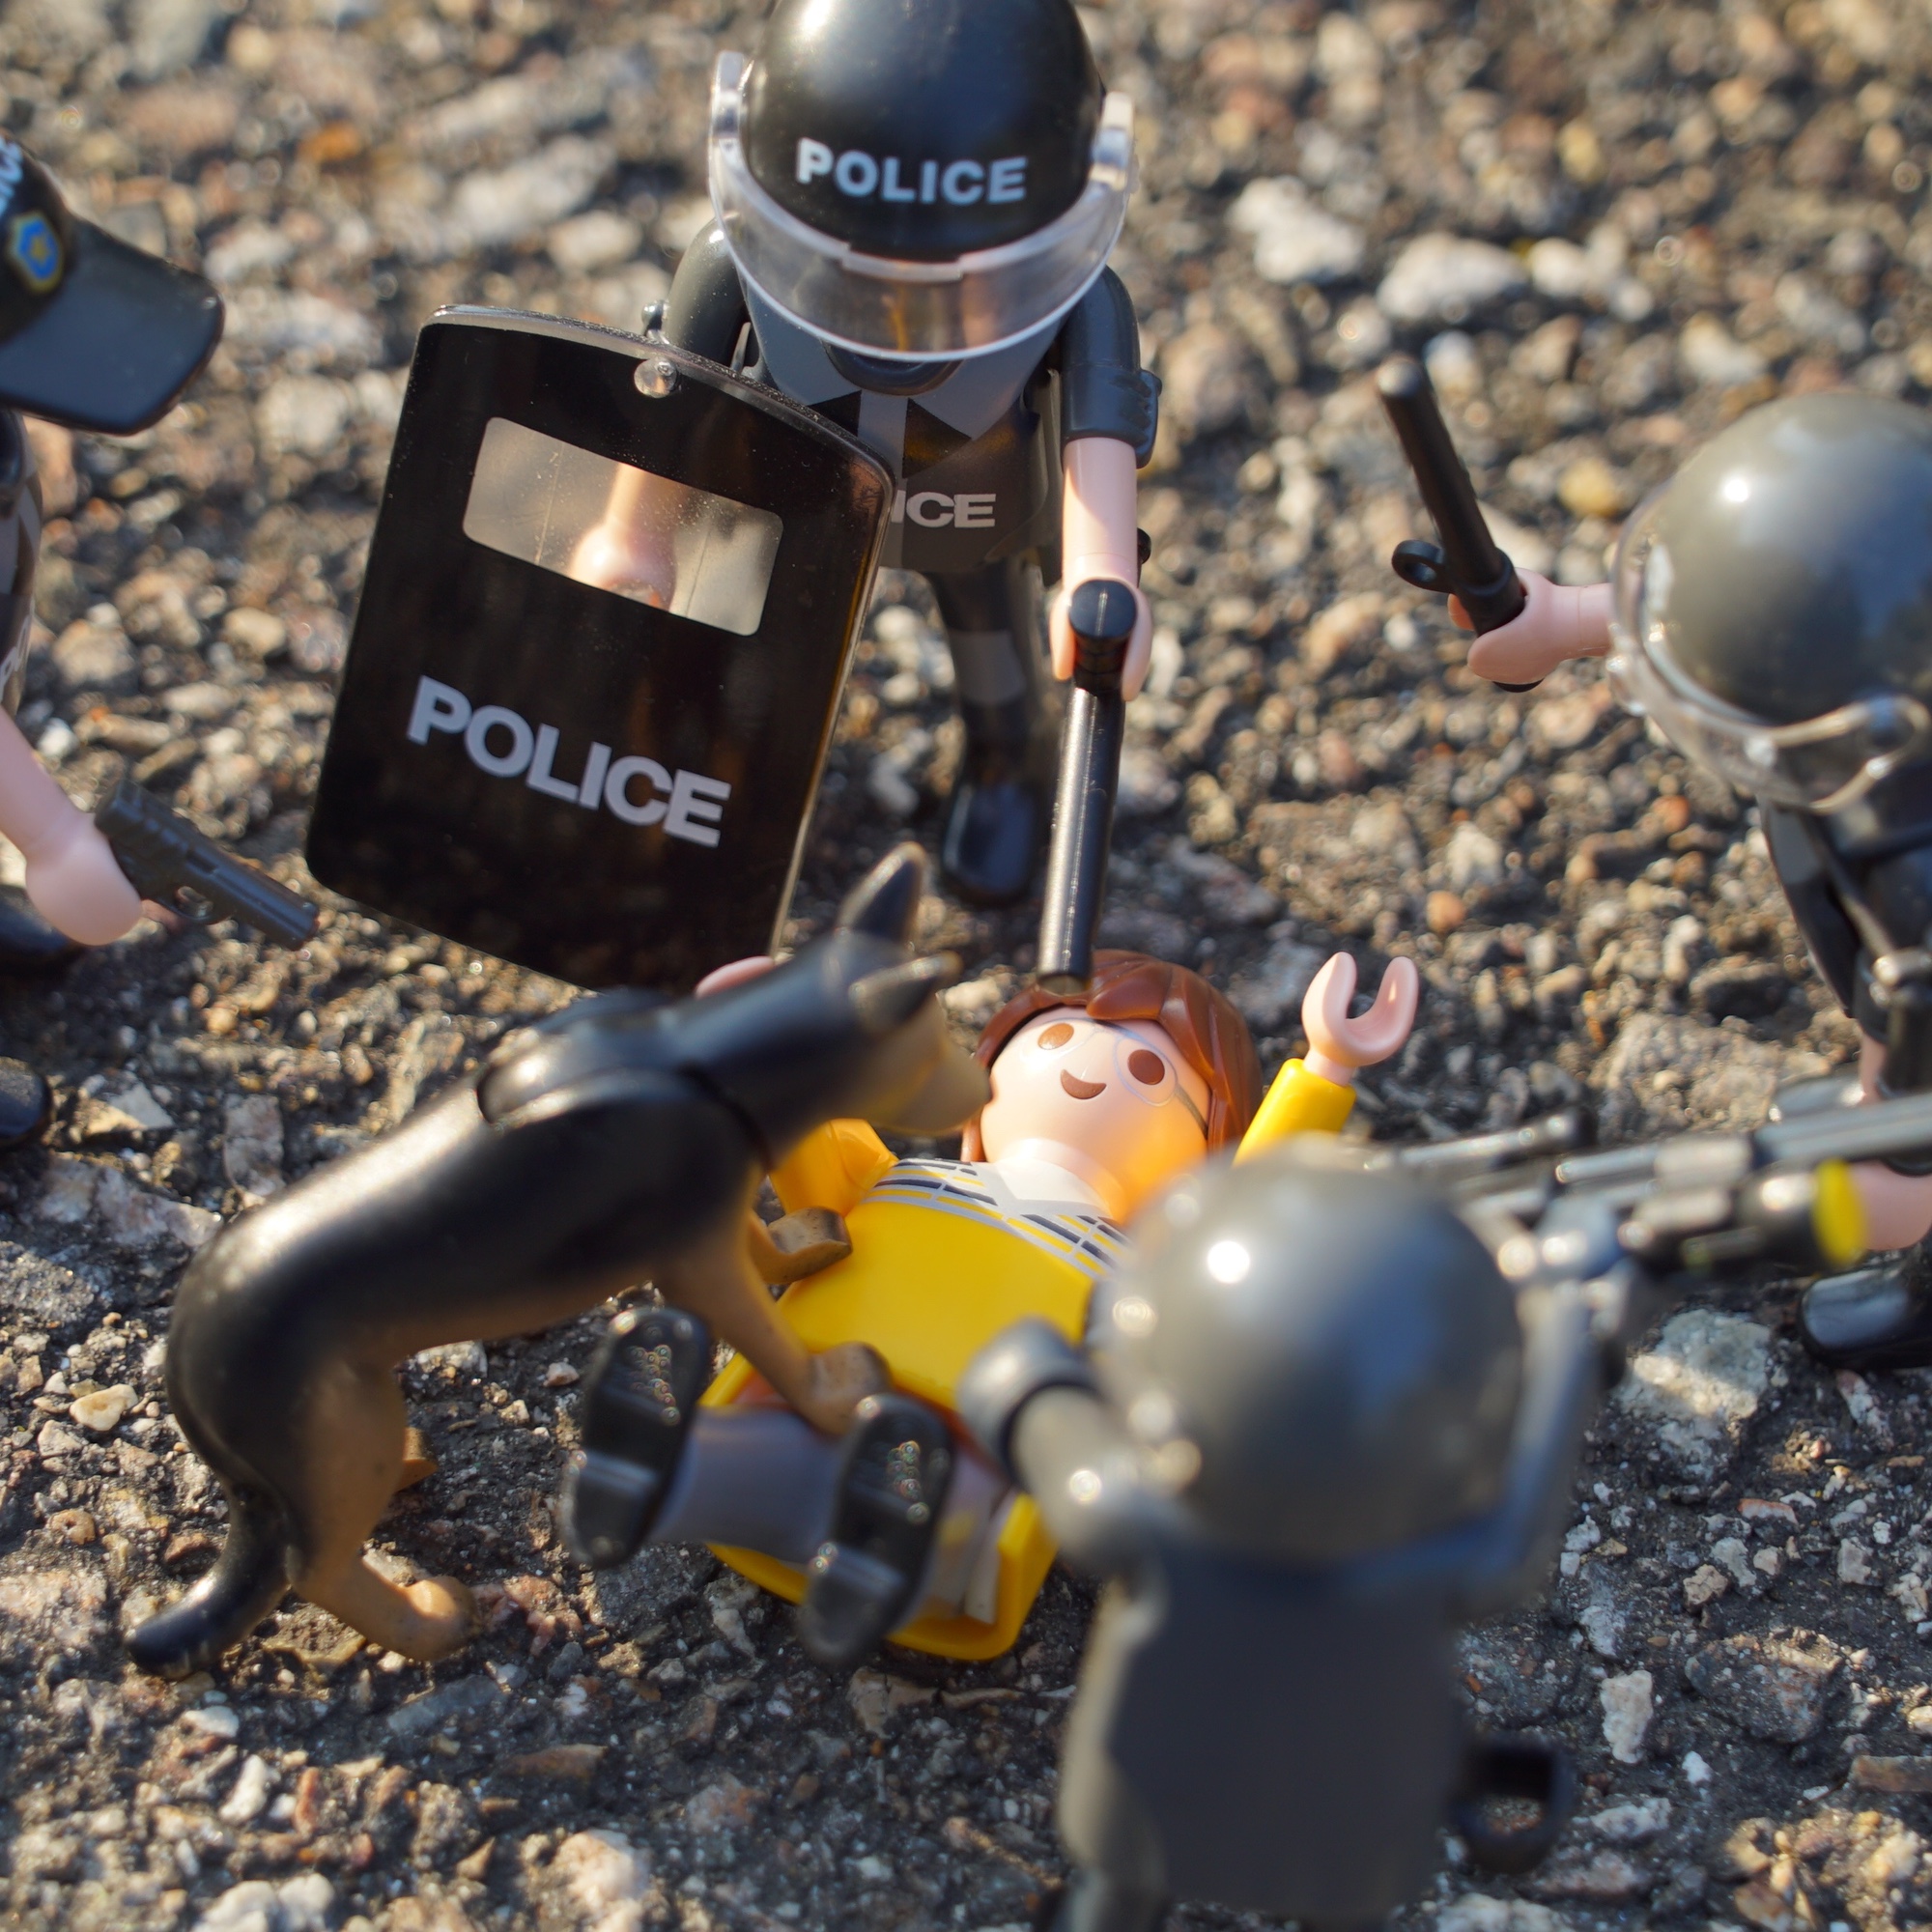 Foto: Polizei im Ordnungsdienst (Plastikfiguren)